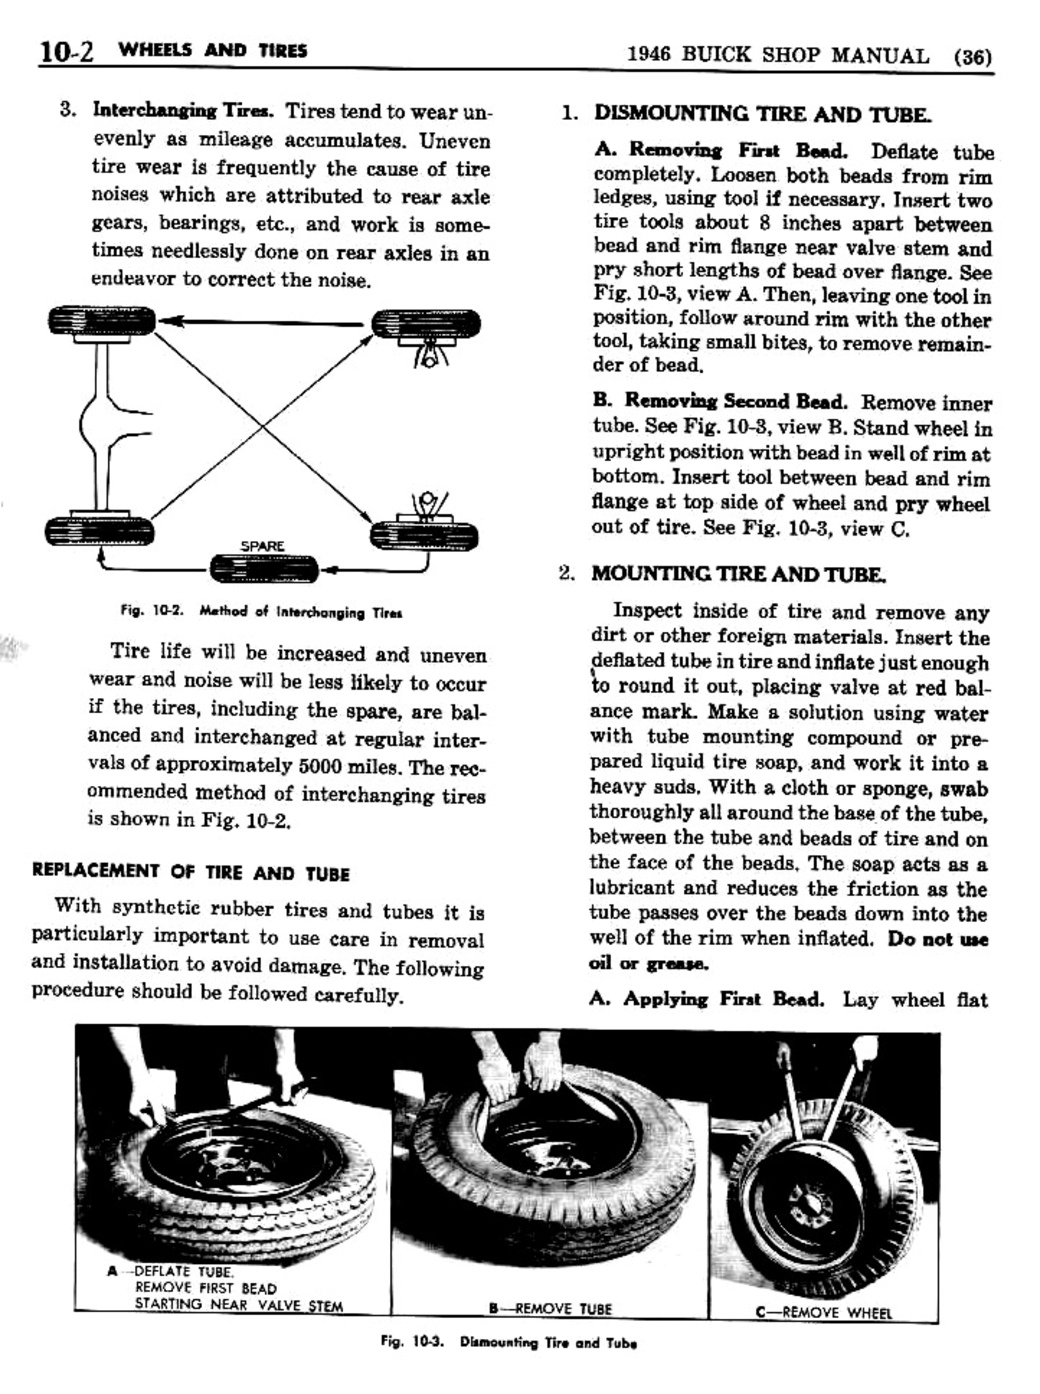 n_10 1946 Buick Shop Manual - Wheels & Tires-002-002.jpg